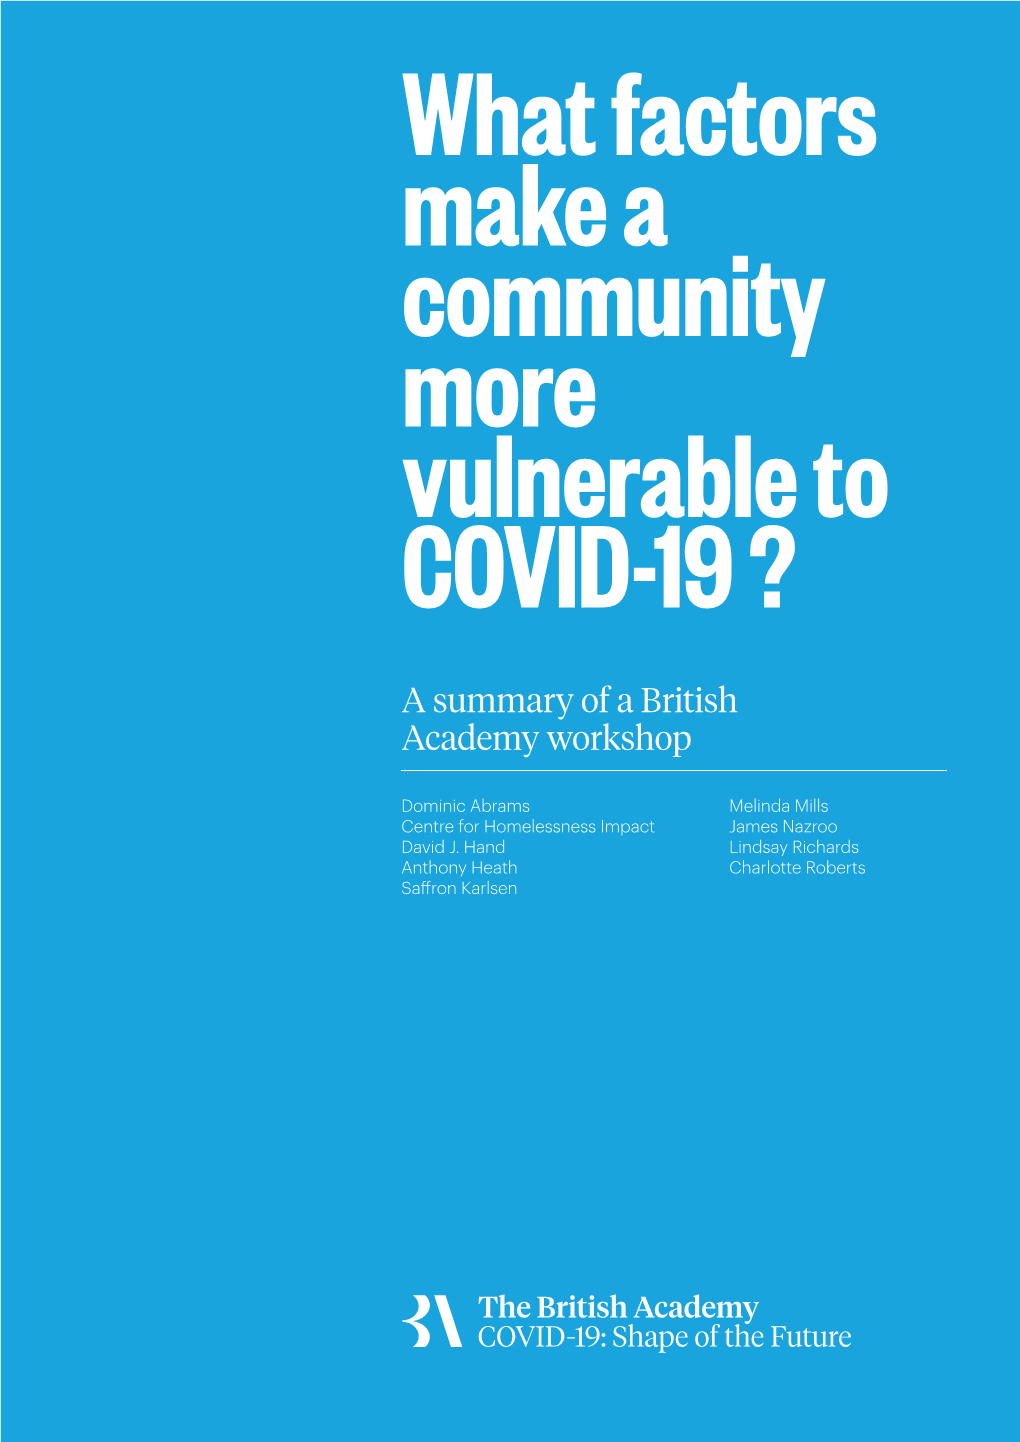 Vulnerability to COVID-19